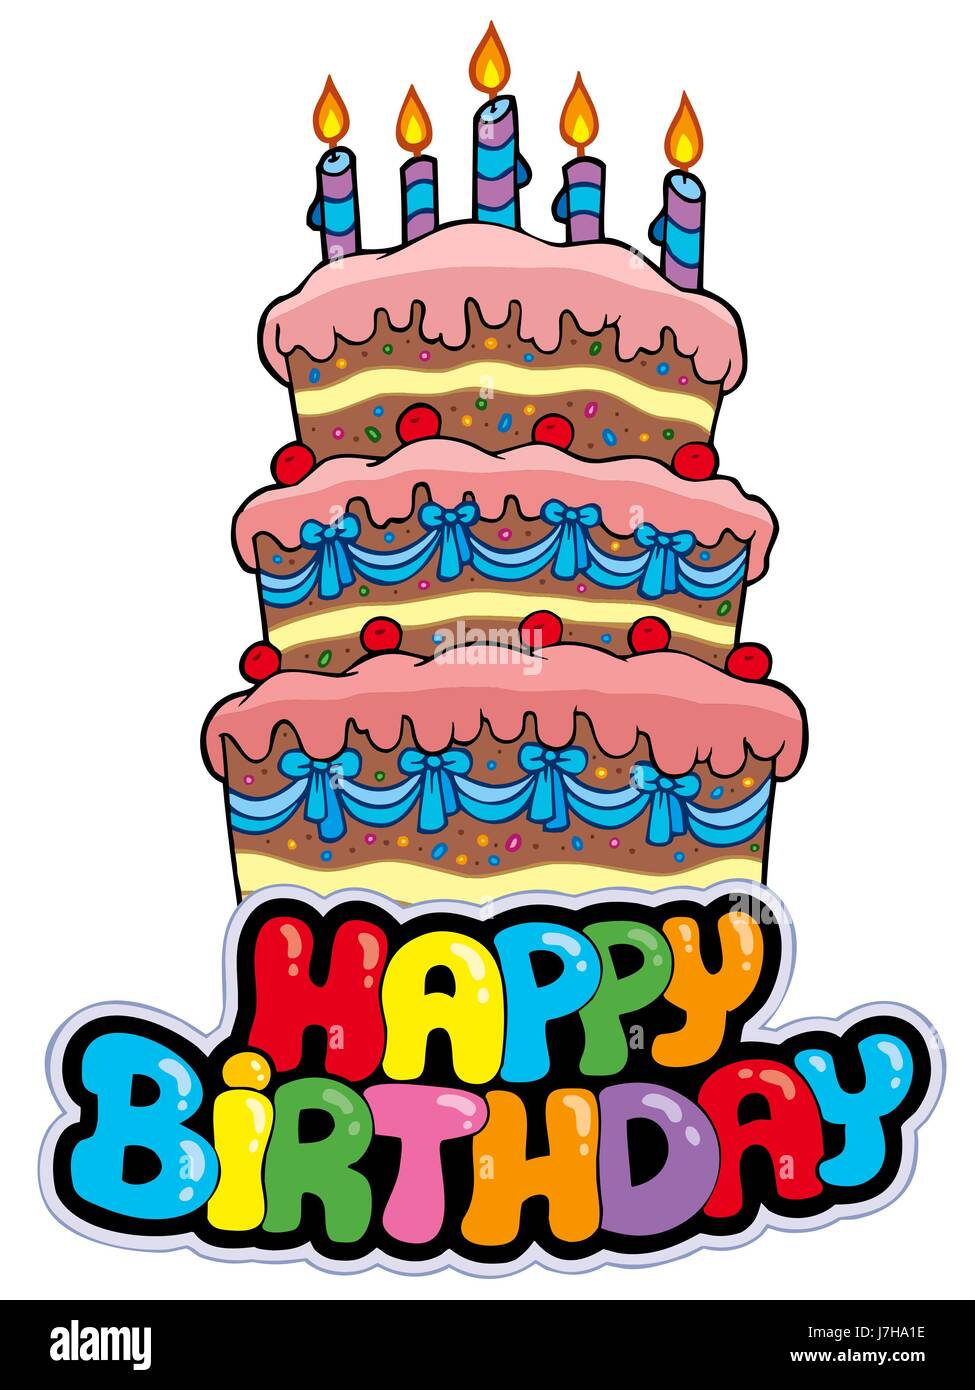 Тортик с надписью с днем рождения нарисованный